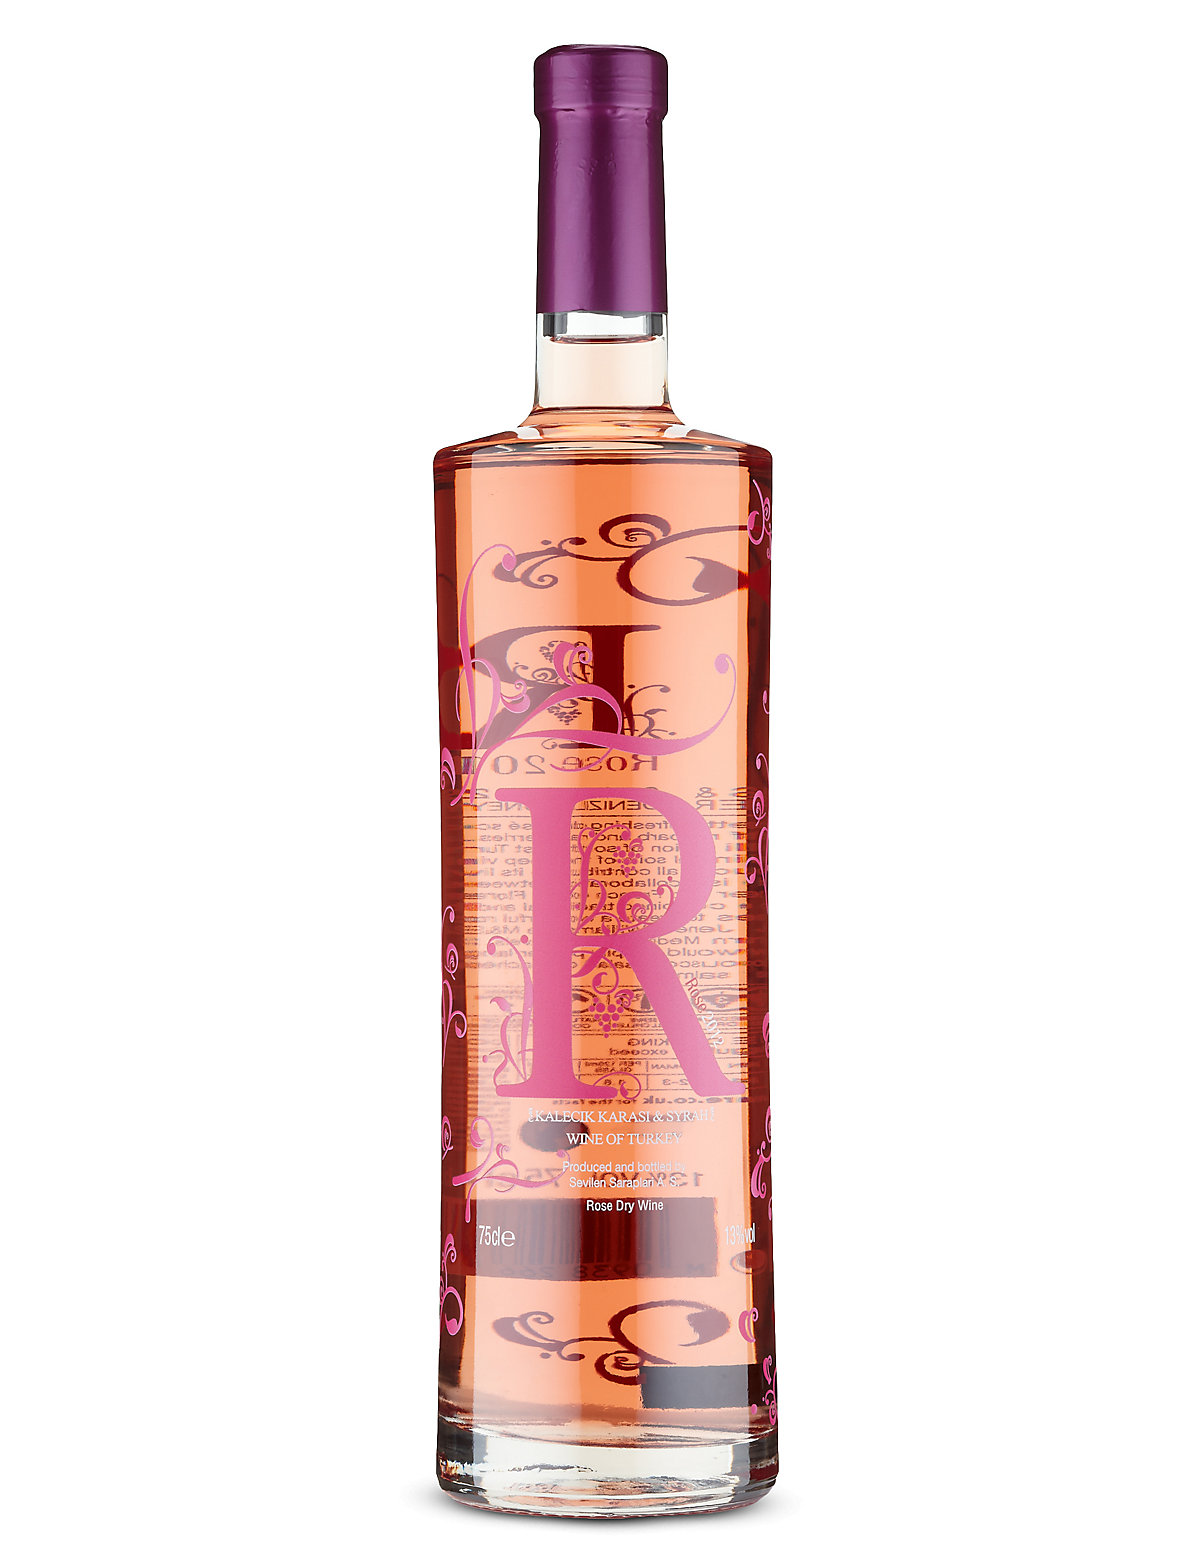 Think Pink! 11 of the Best Rosés for Summer 2015 | Vinspire